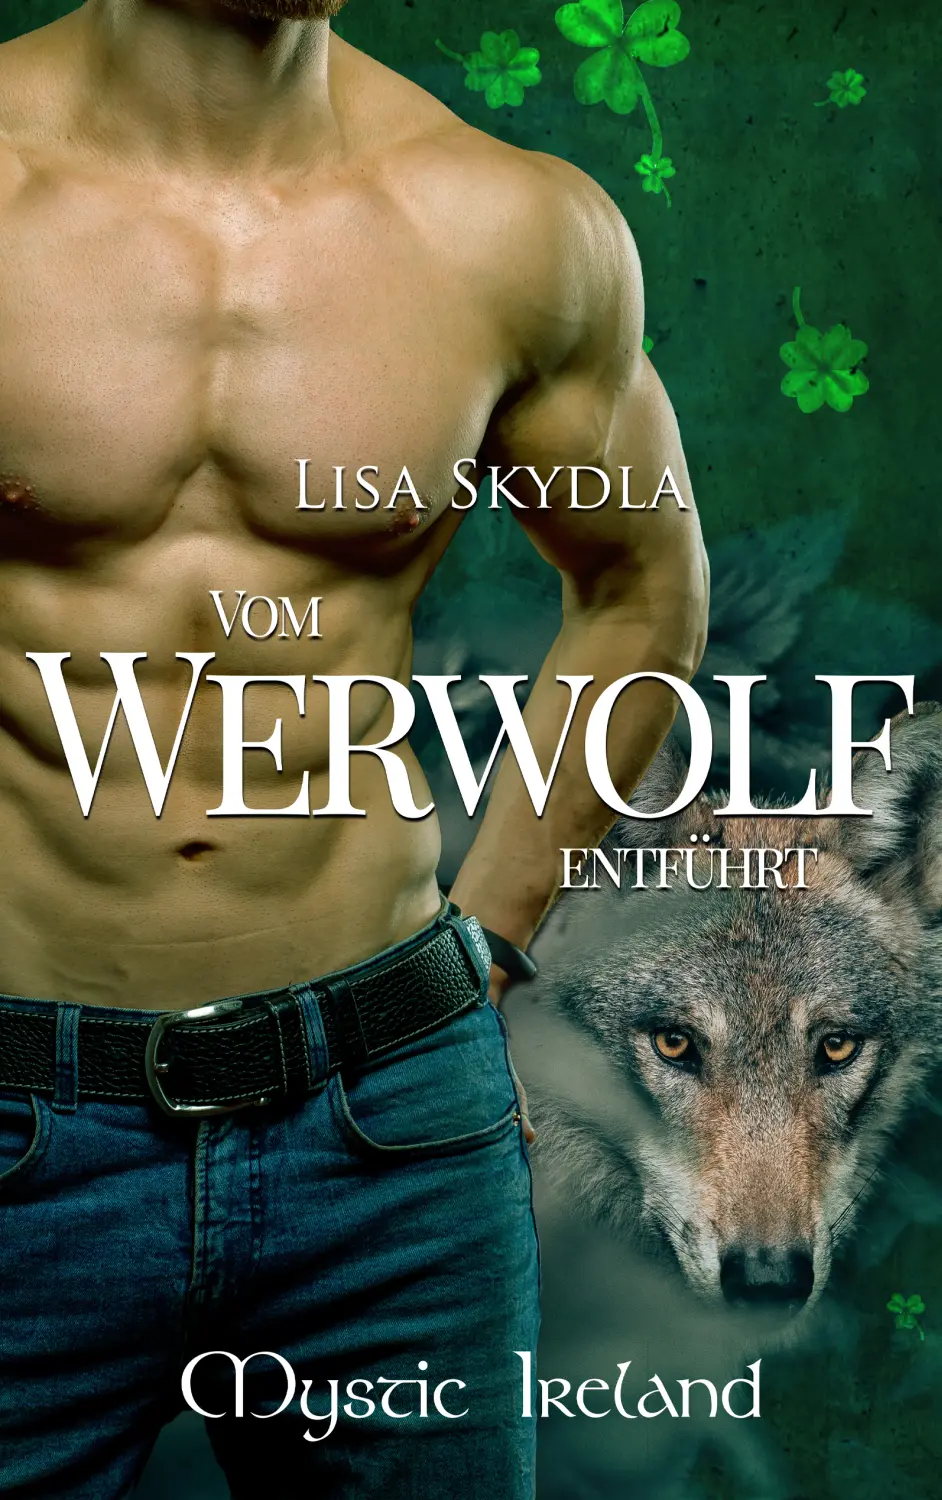 Hemdloser Mann und ein Wolf im Buchcover